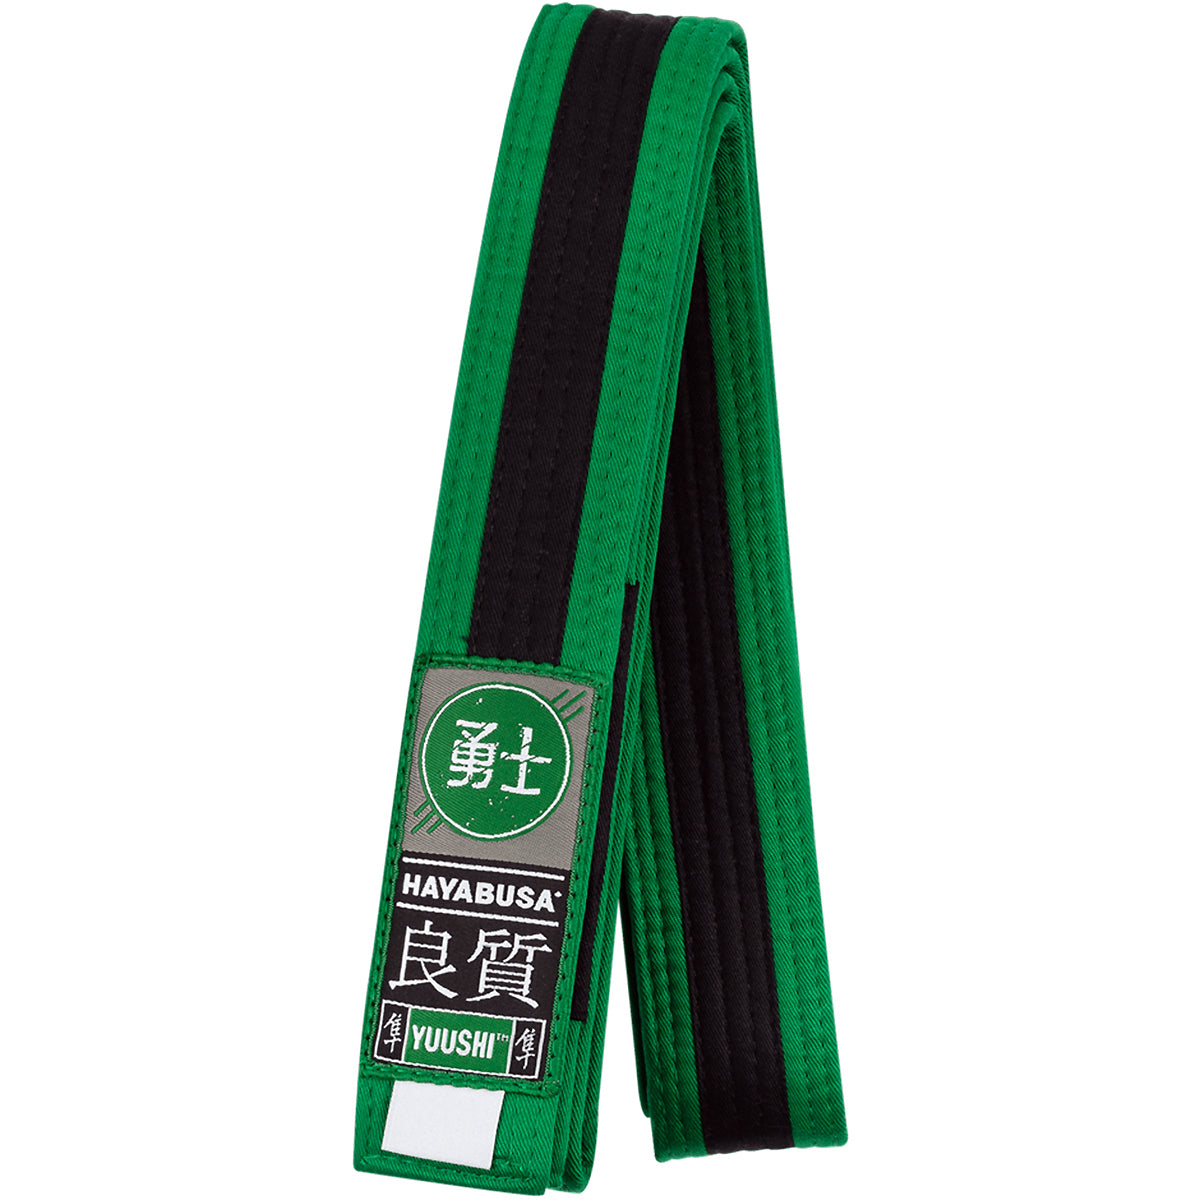 Hayabusa Youth Jiu-Jitsu Belt - Green/Black Hayabusa